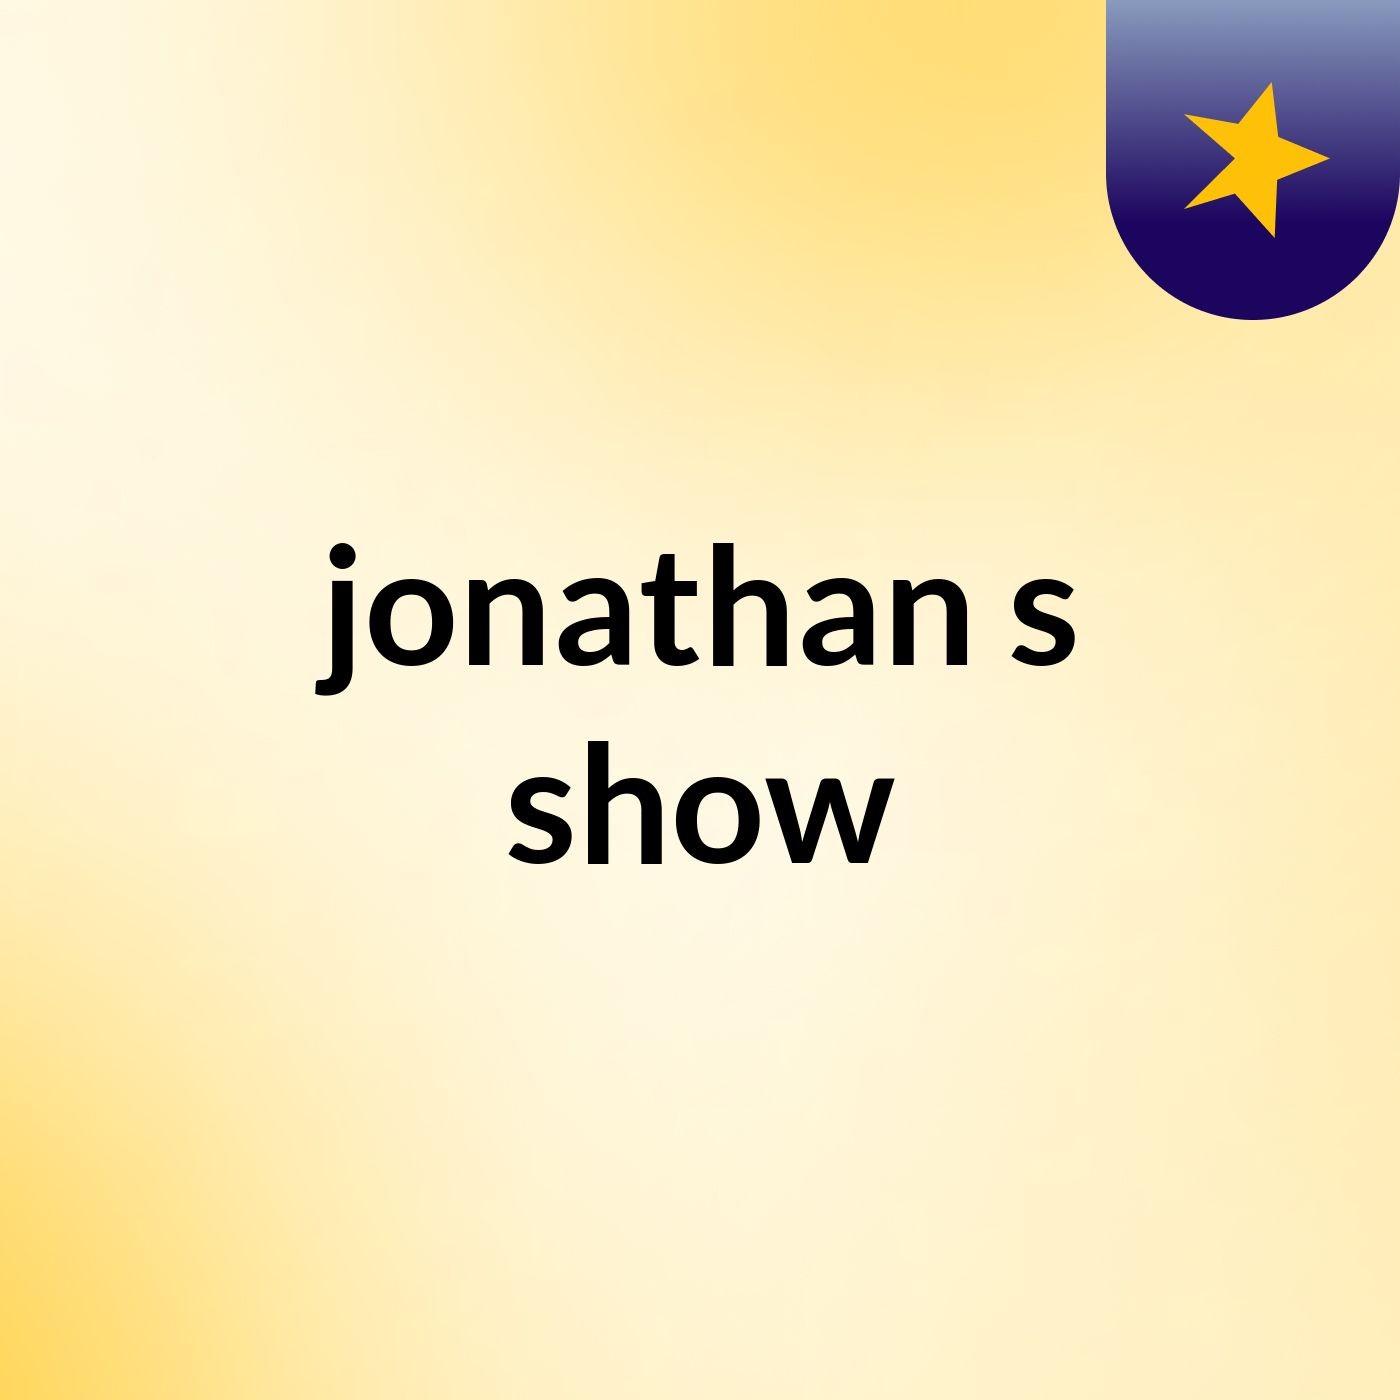 jonathan's show